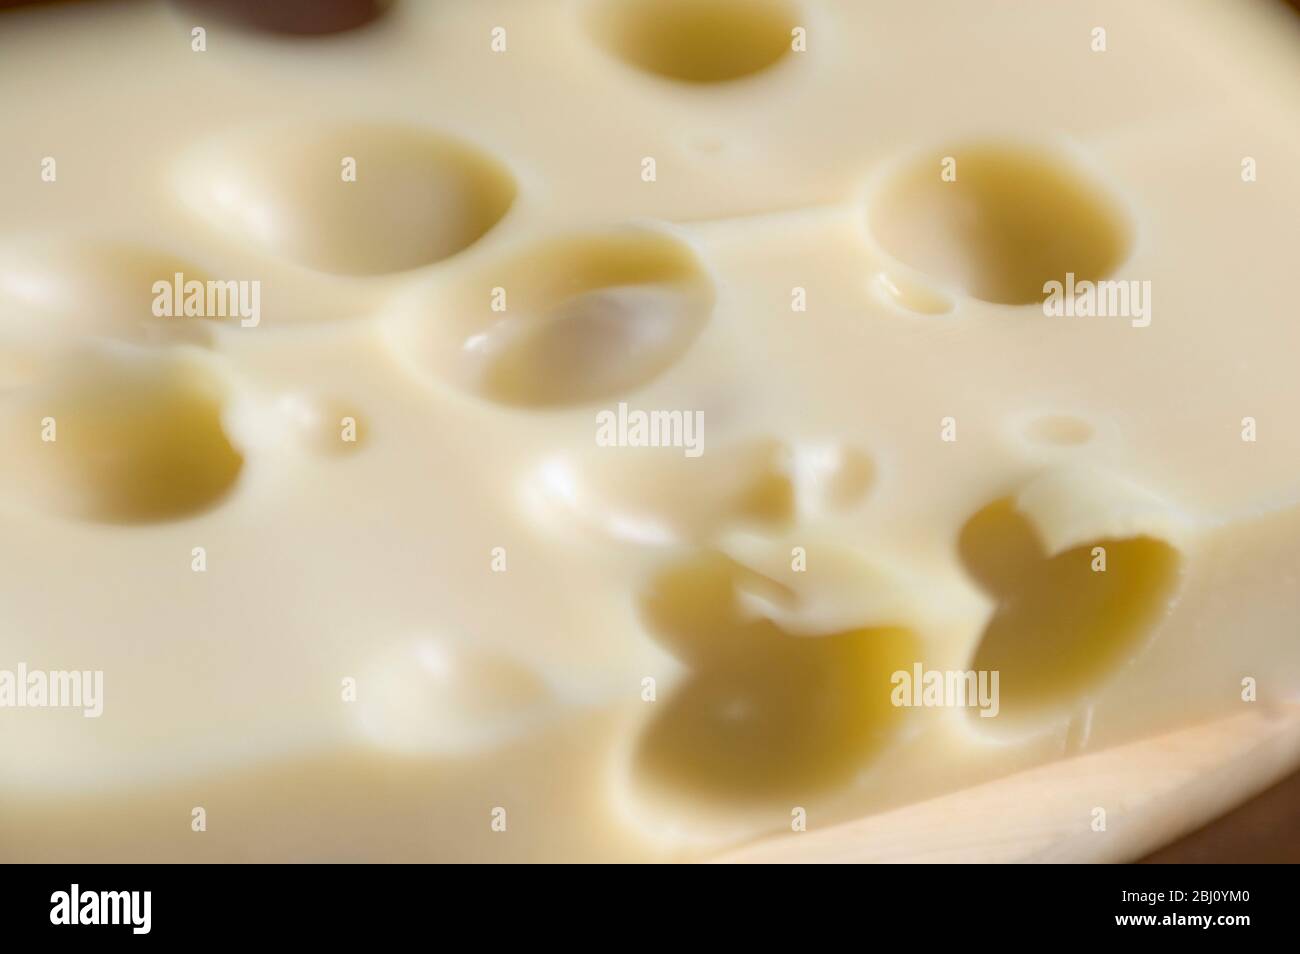 Plateau de fromage Emmental tourné avec lentille pour lapbébés pour une faible profondeur de champ - Banque D'Images